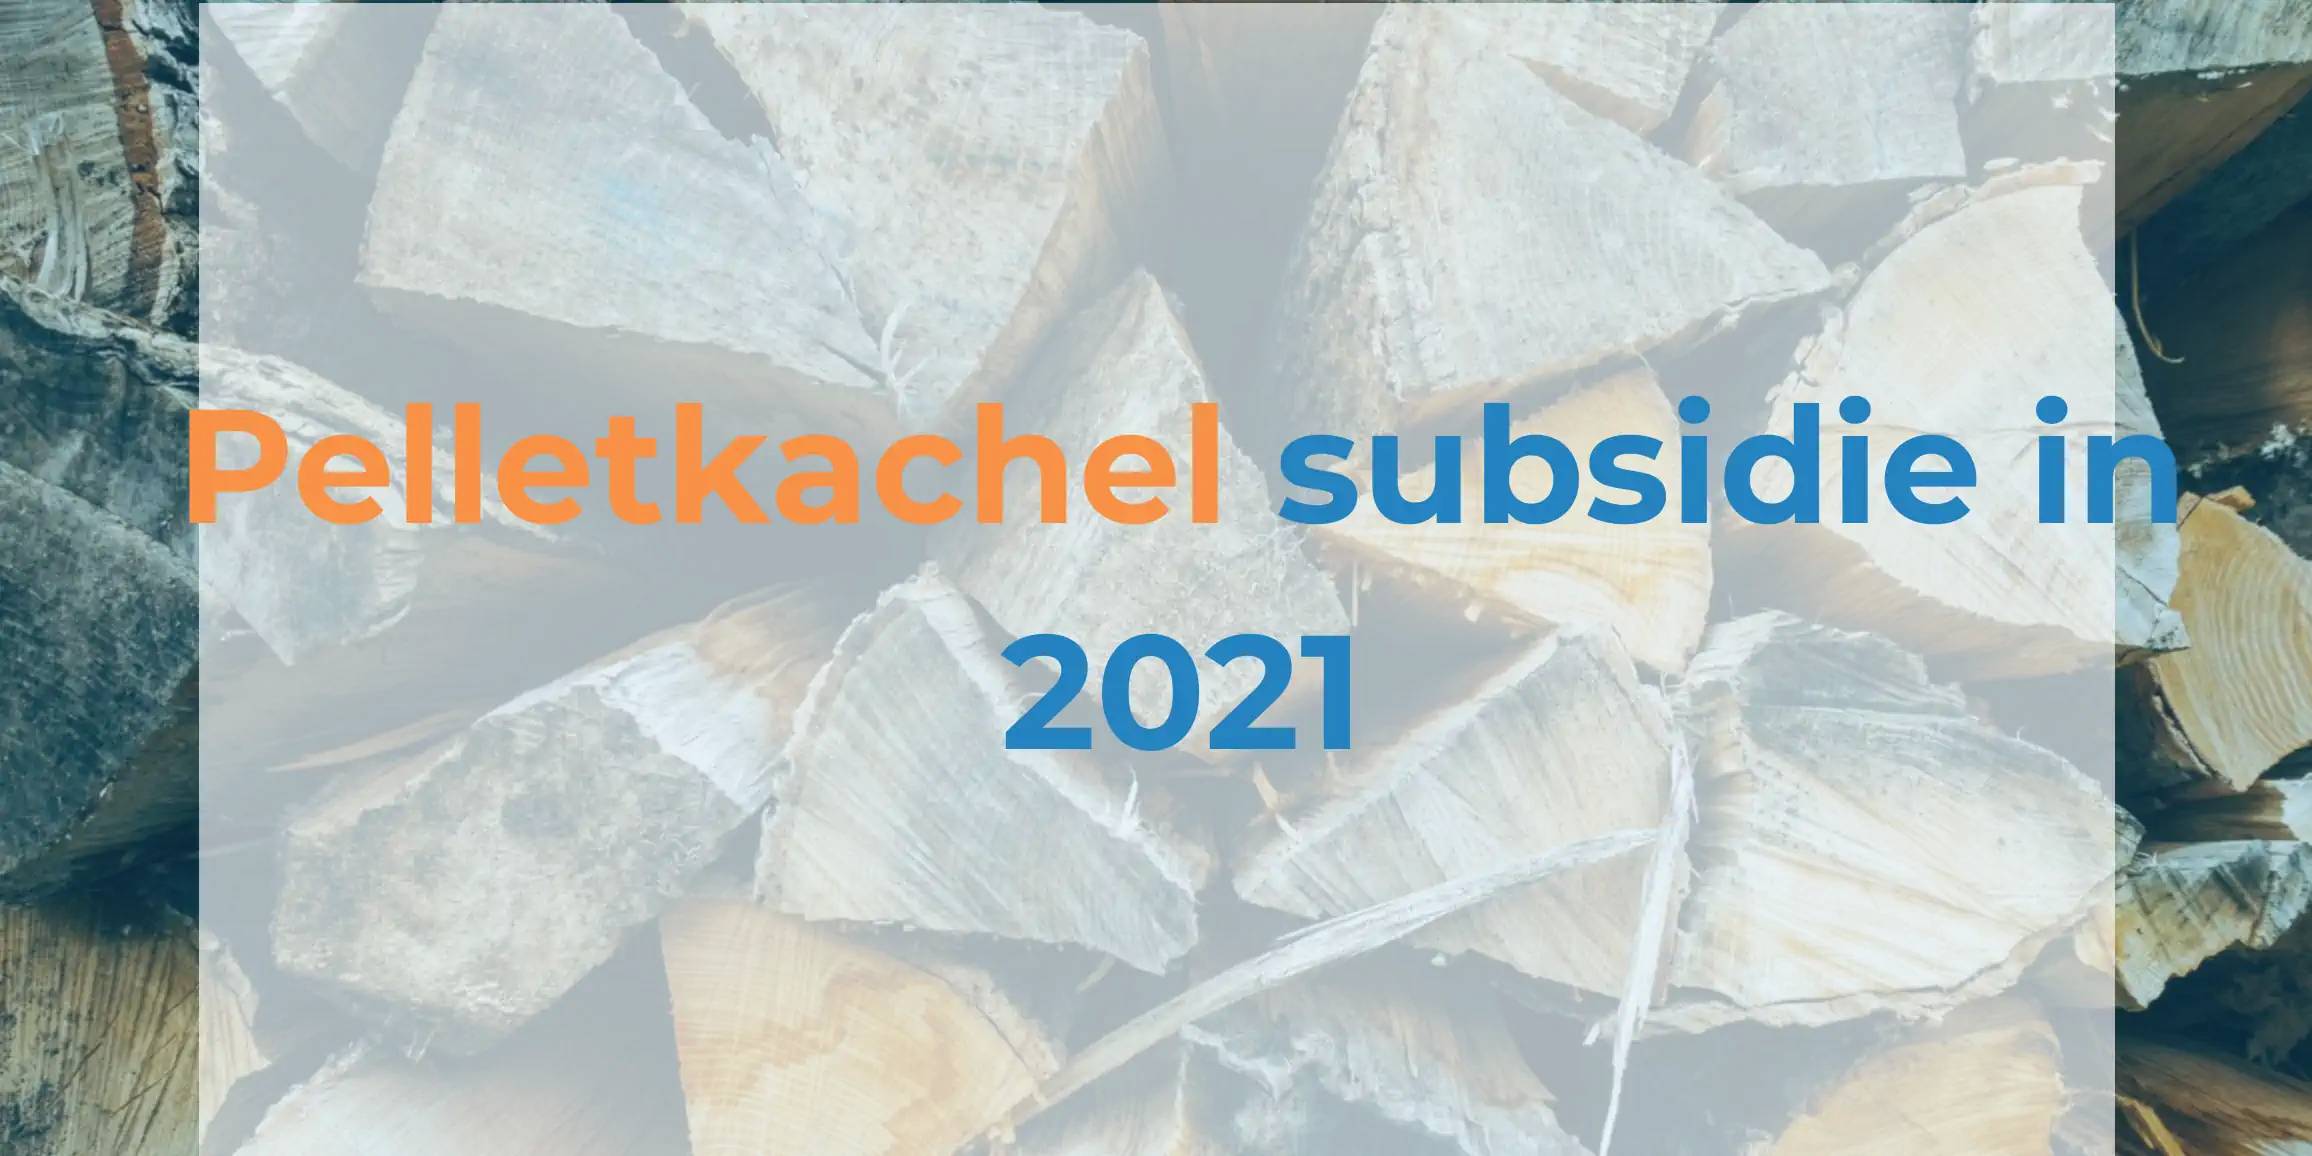 Subsidie pelletkachel 2021